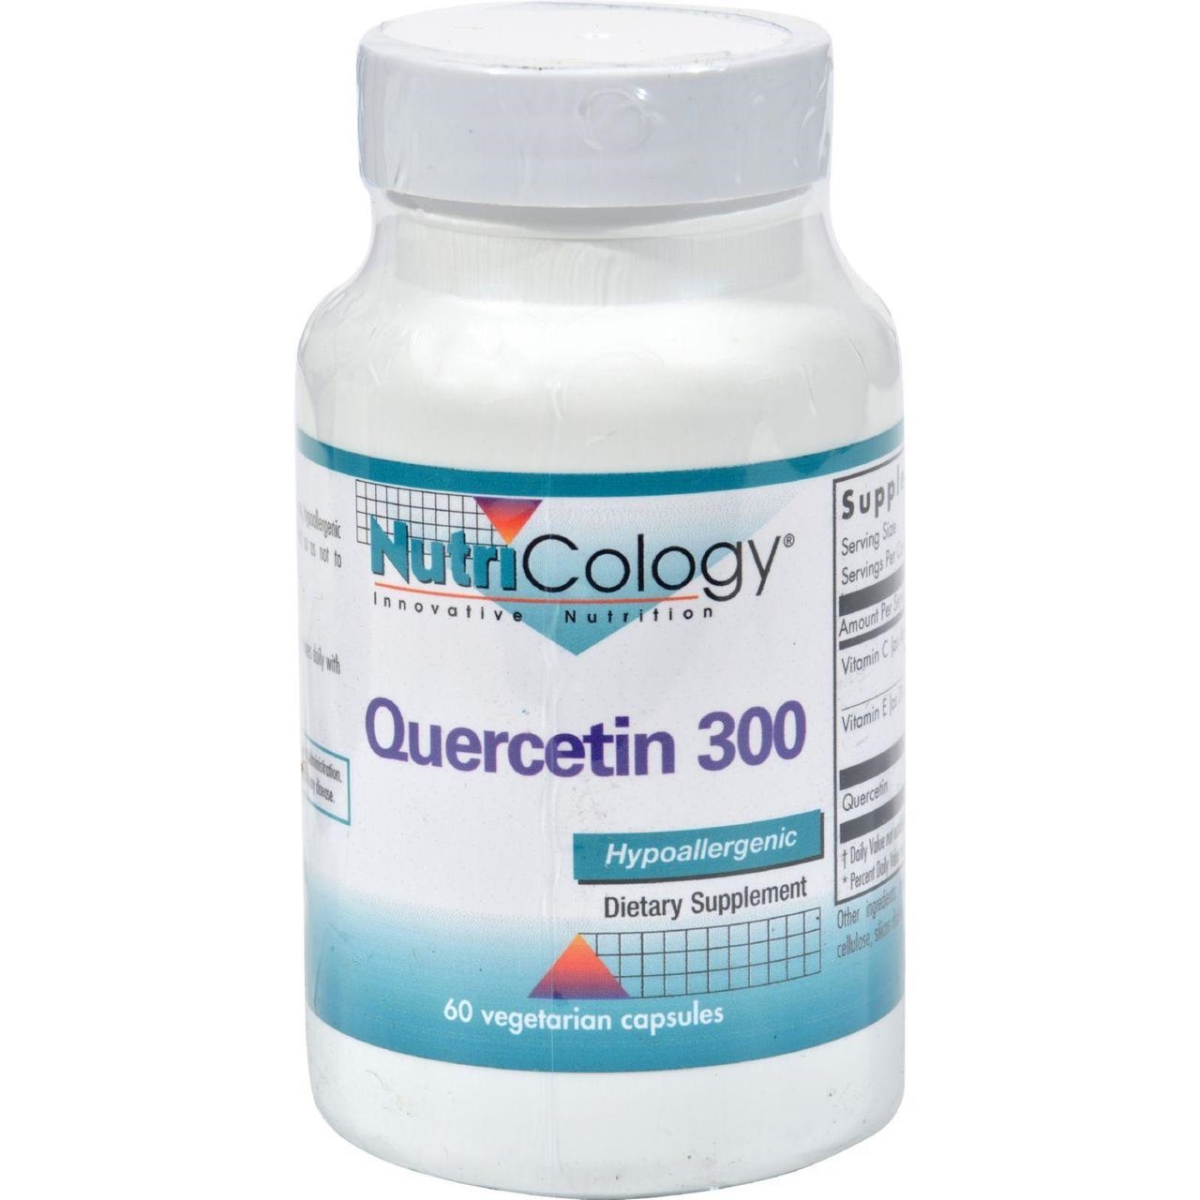 Hg0524397 Quercetin 300 - 60 Capsules